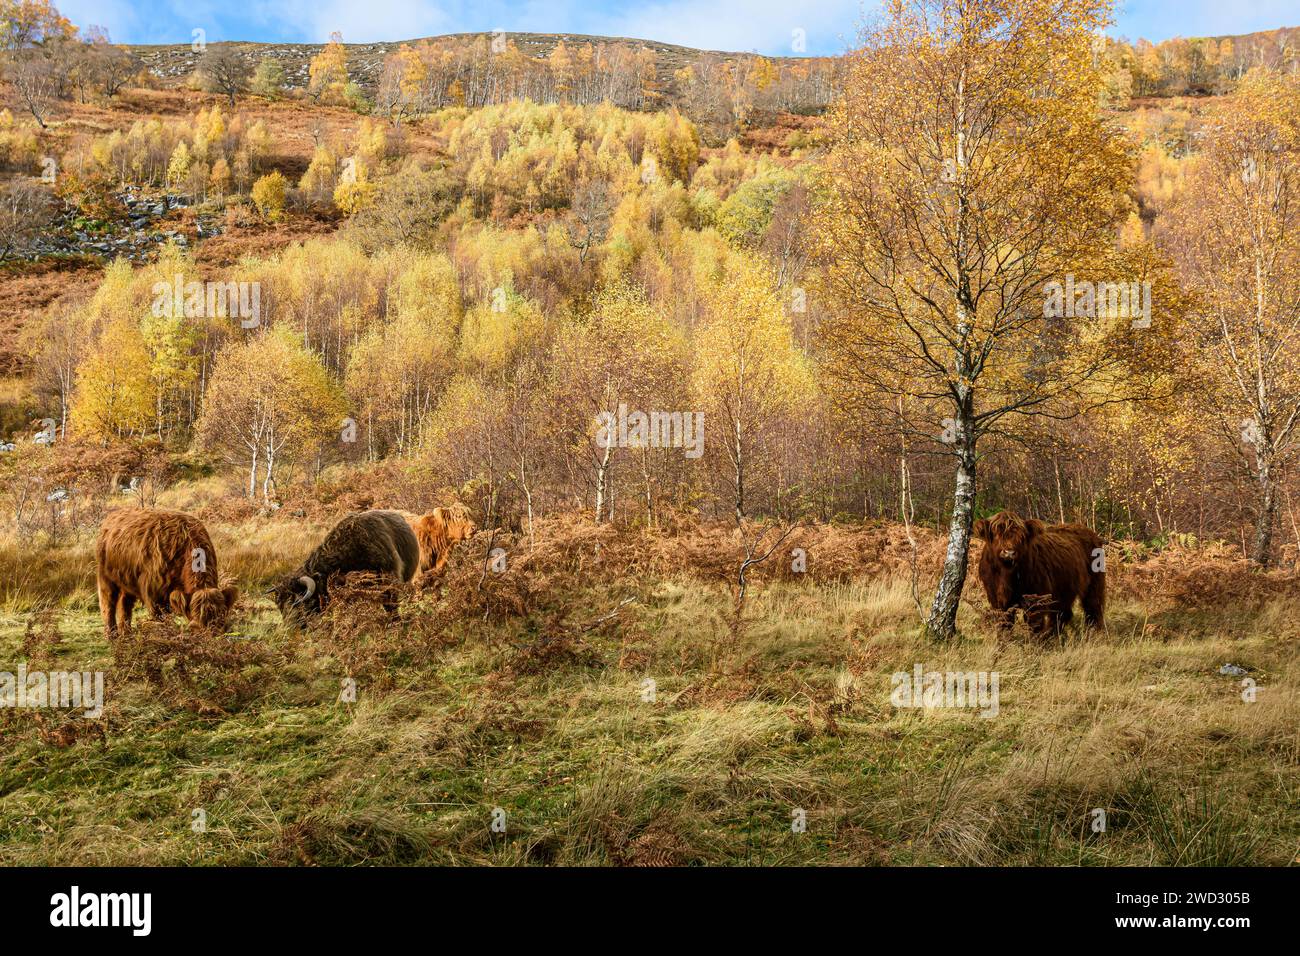 Ammira una collina rocciosa boscosa con betulle Betula, e quattro bovini delle Highland che si nutrono alla base di salici e prati, tutti illuminati con su Foto Stock